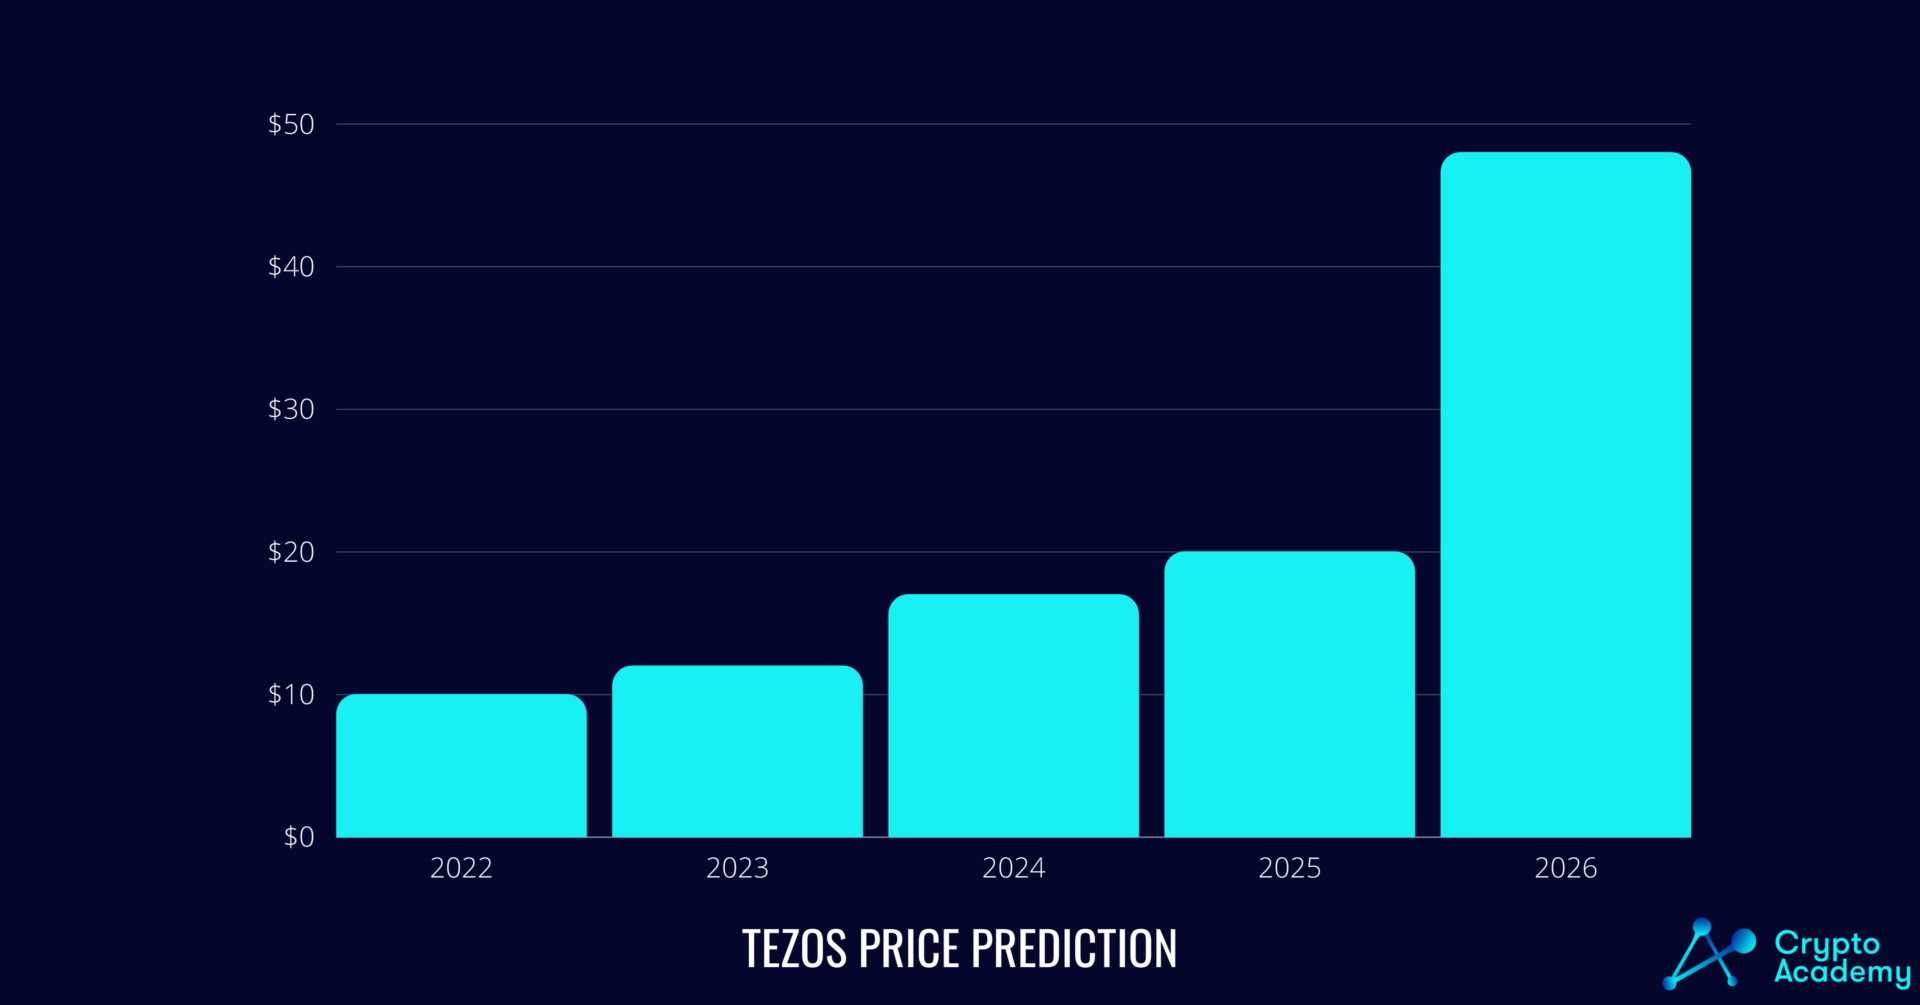 Tezos (XTZ) price prediction for 2025